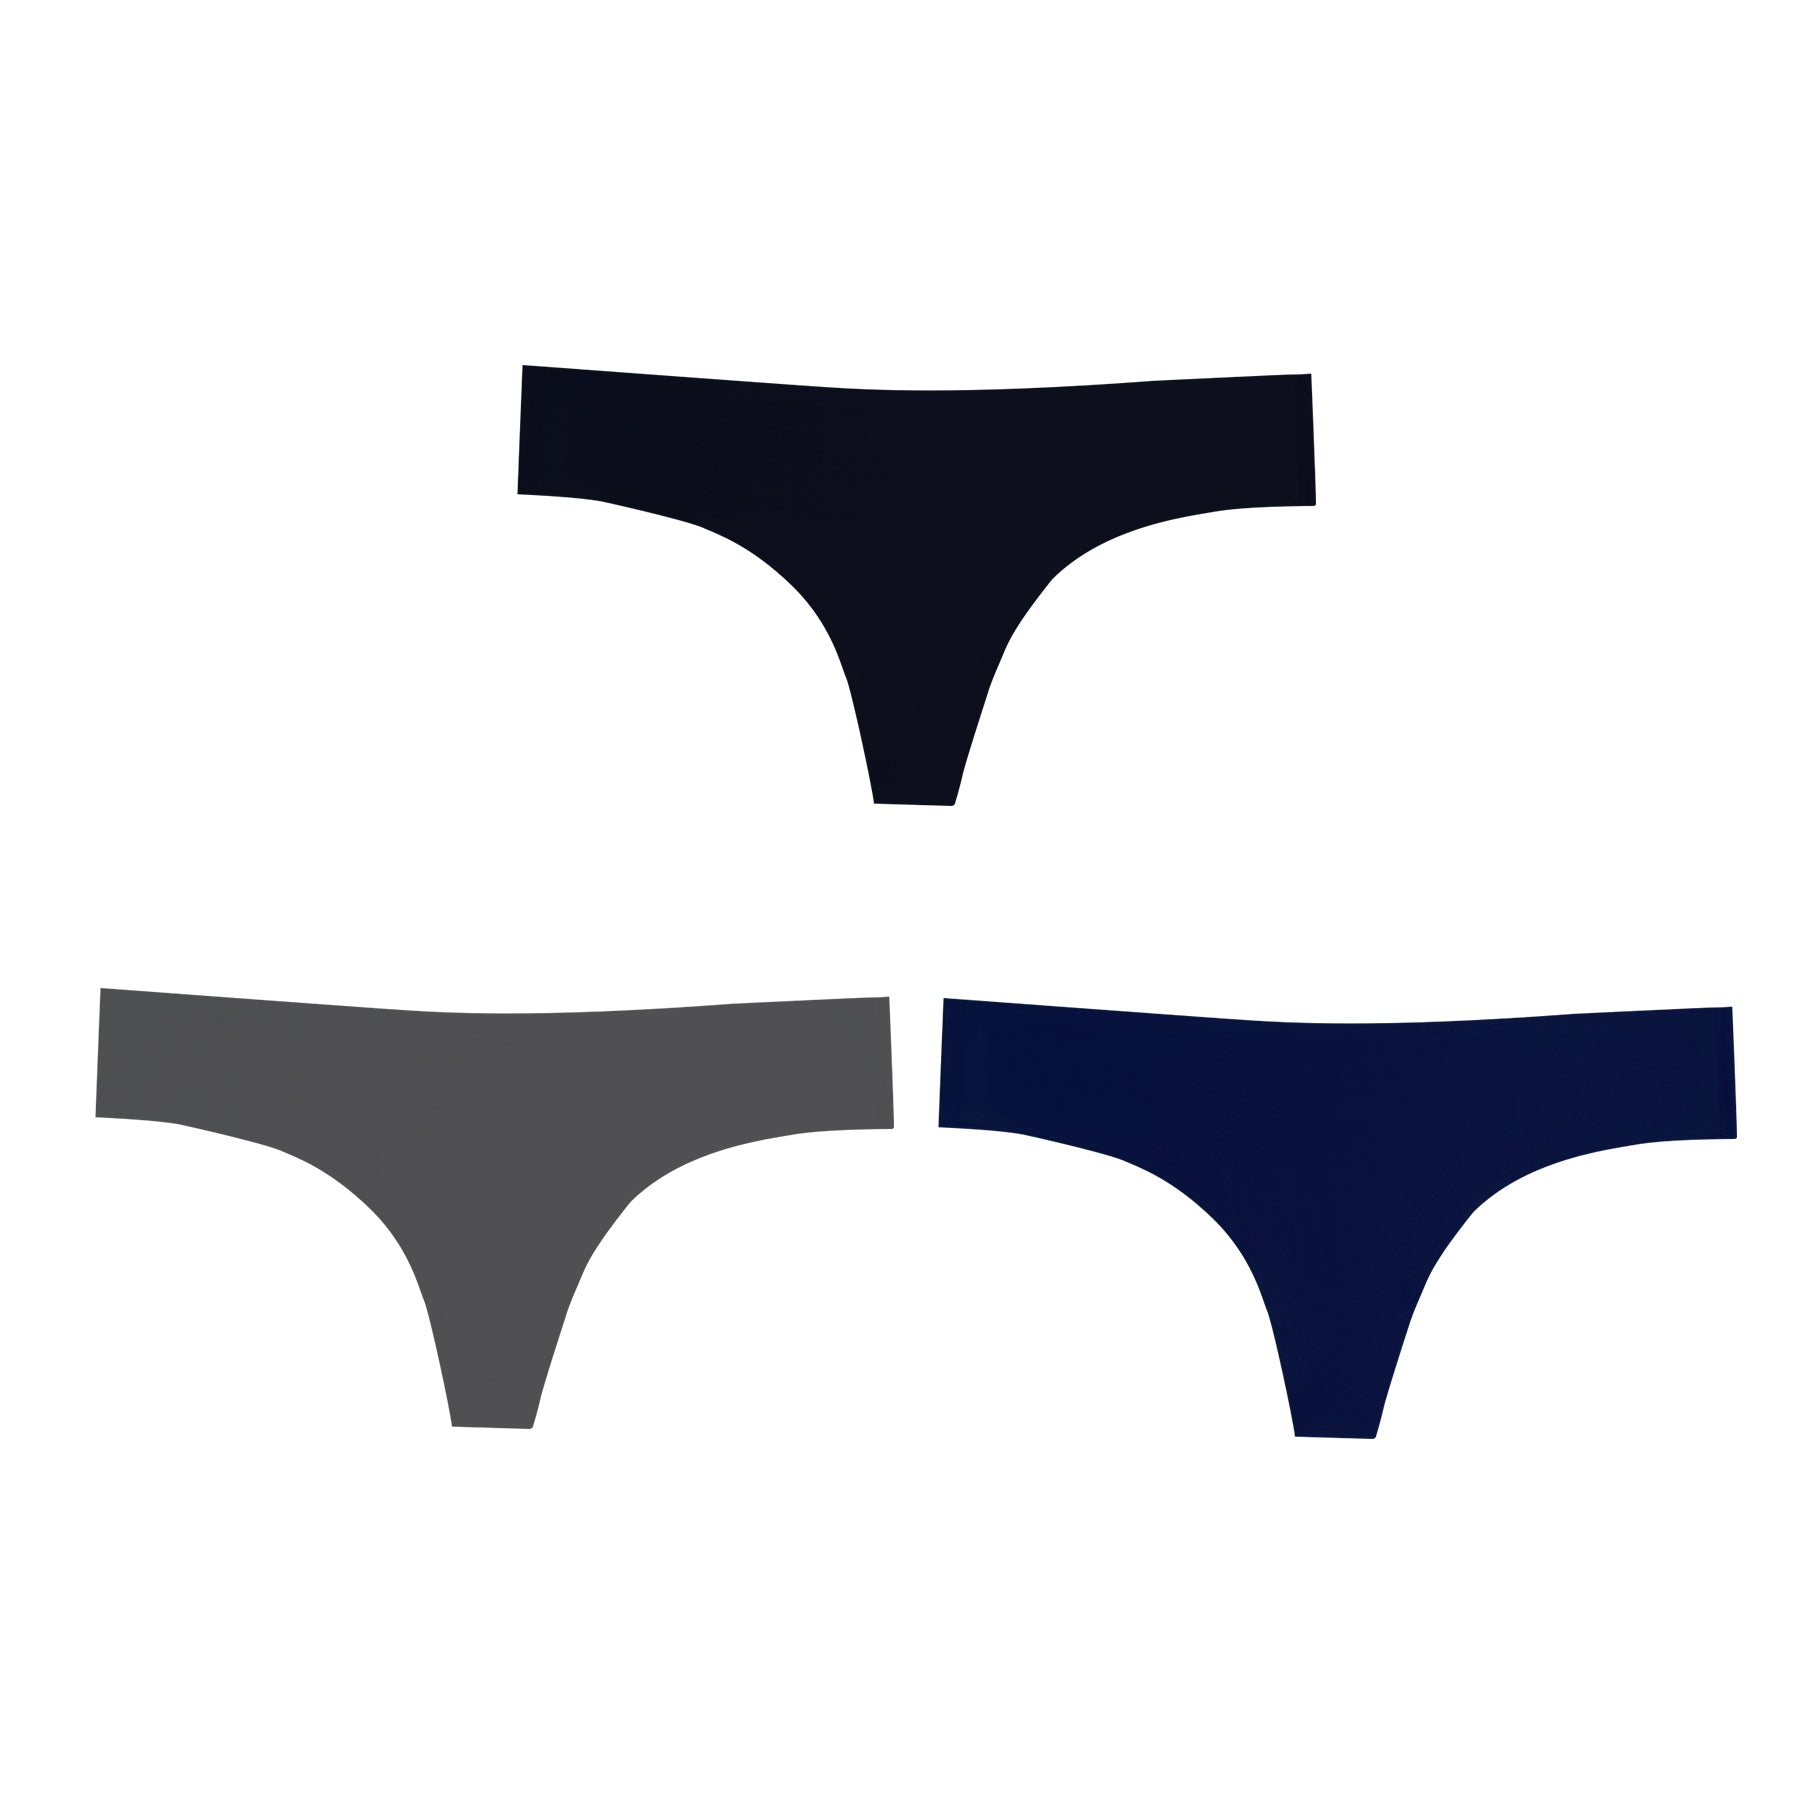 Kribi Sport - The World's Cleanest Active Underwear - HercLeon